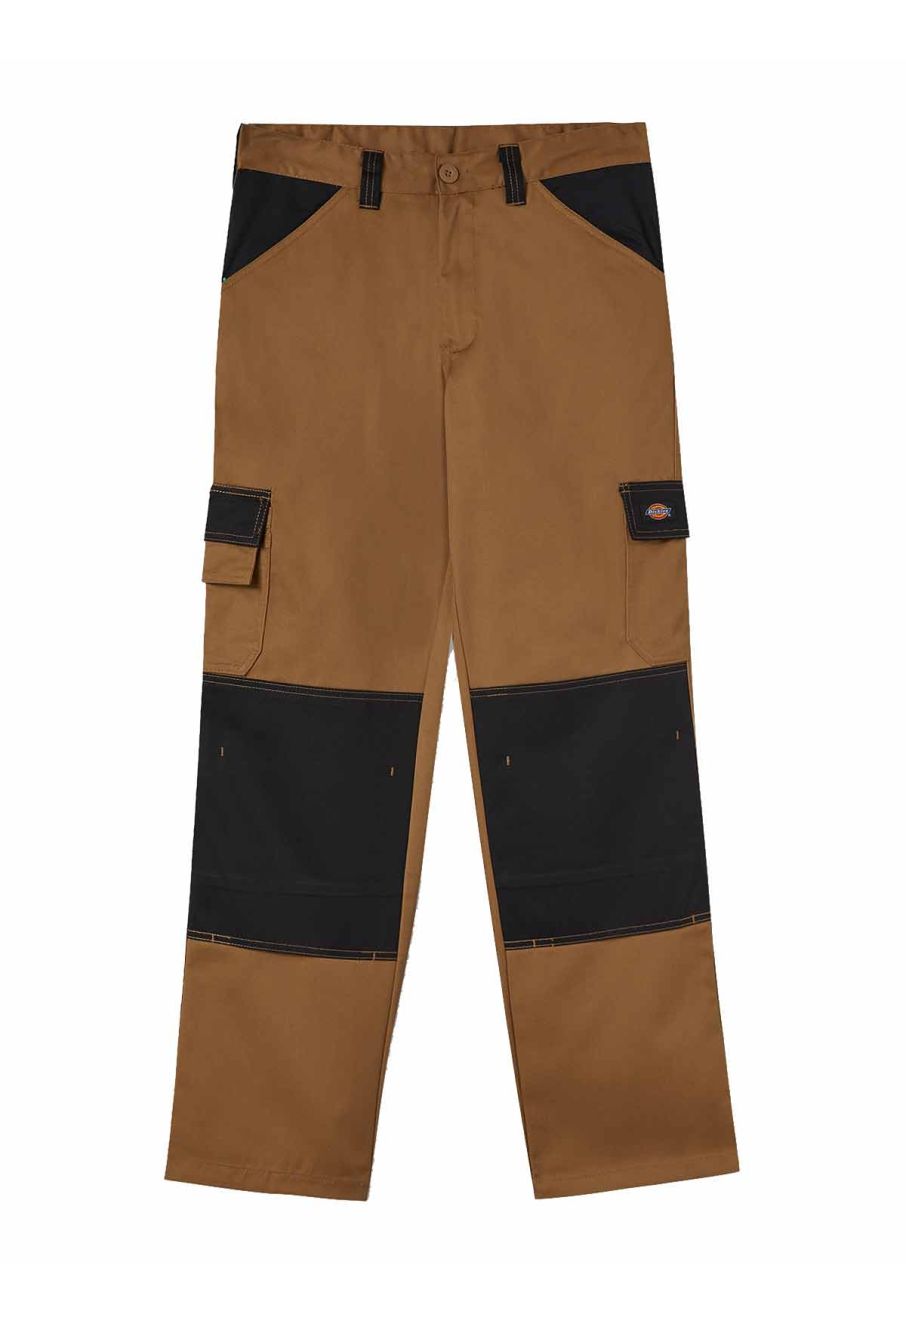 Dickies Eisenhower black multi-pocket hard-wearing work trousers | eBay